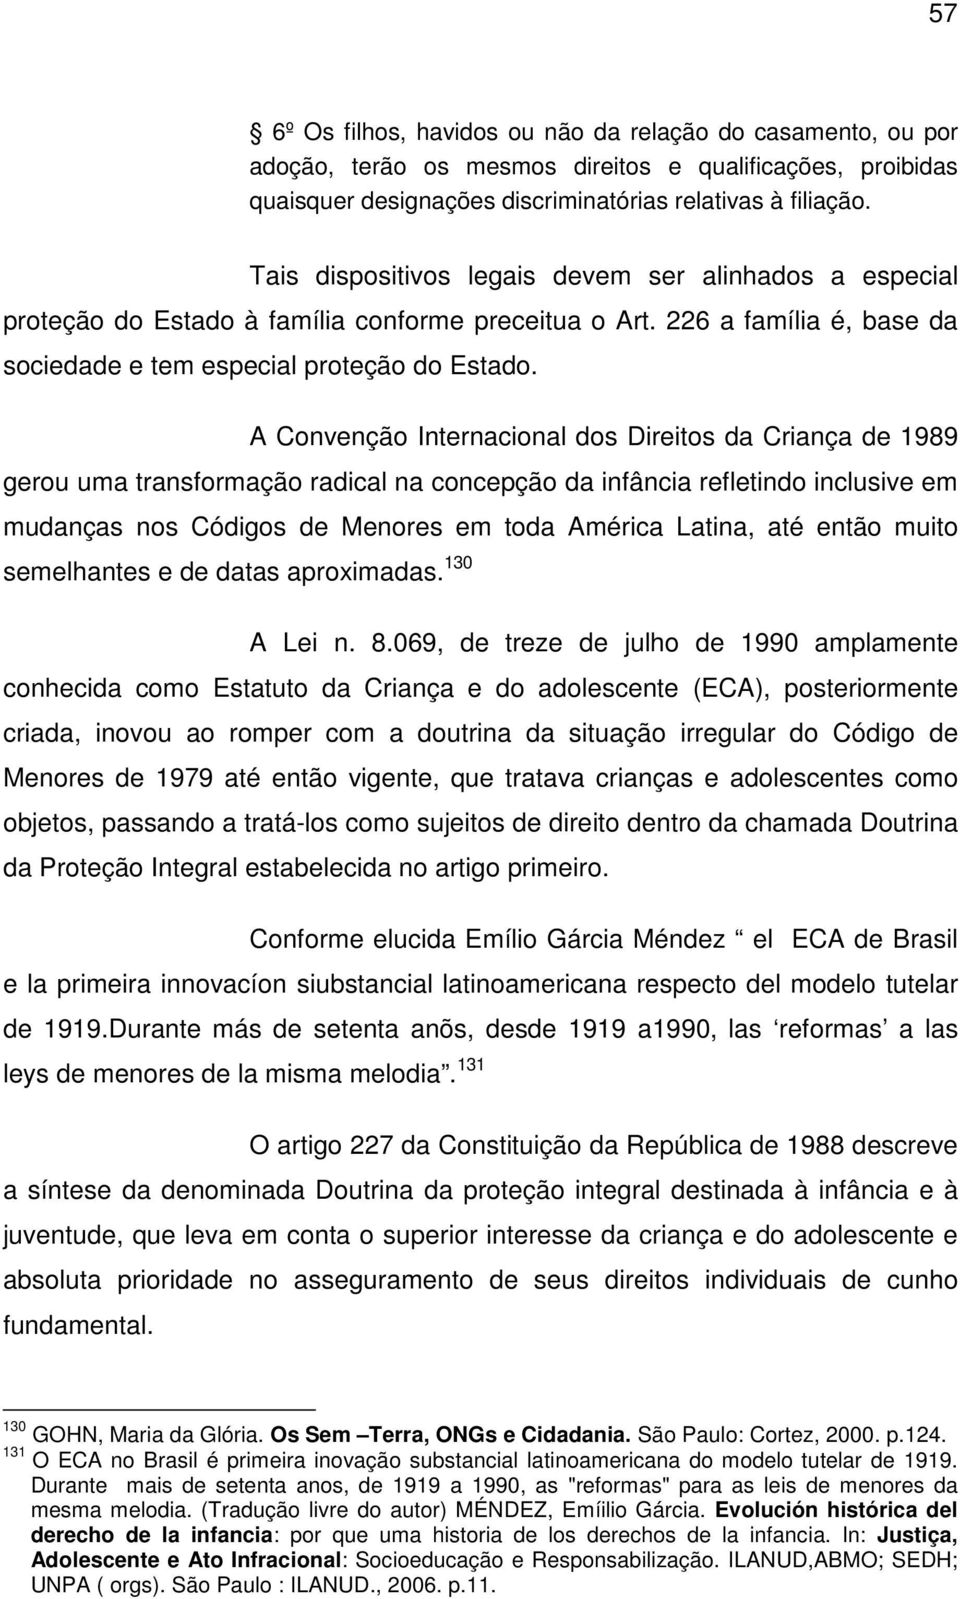 A Convenção Internacional dos Direitos da Criança de 1989 gerou uma transformação radical na concepção da infância refletindo inclusive em mudanças nos Códigos de Menores em toda América Latina, até